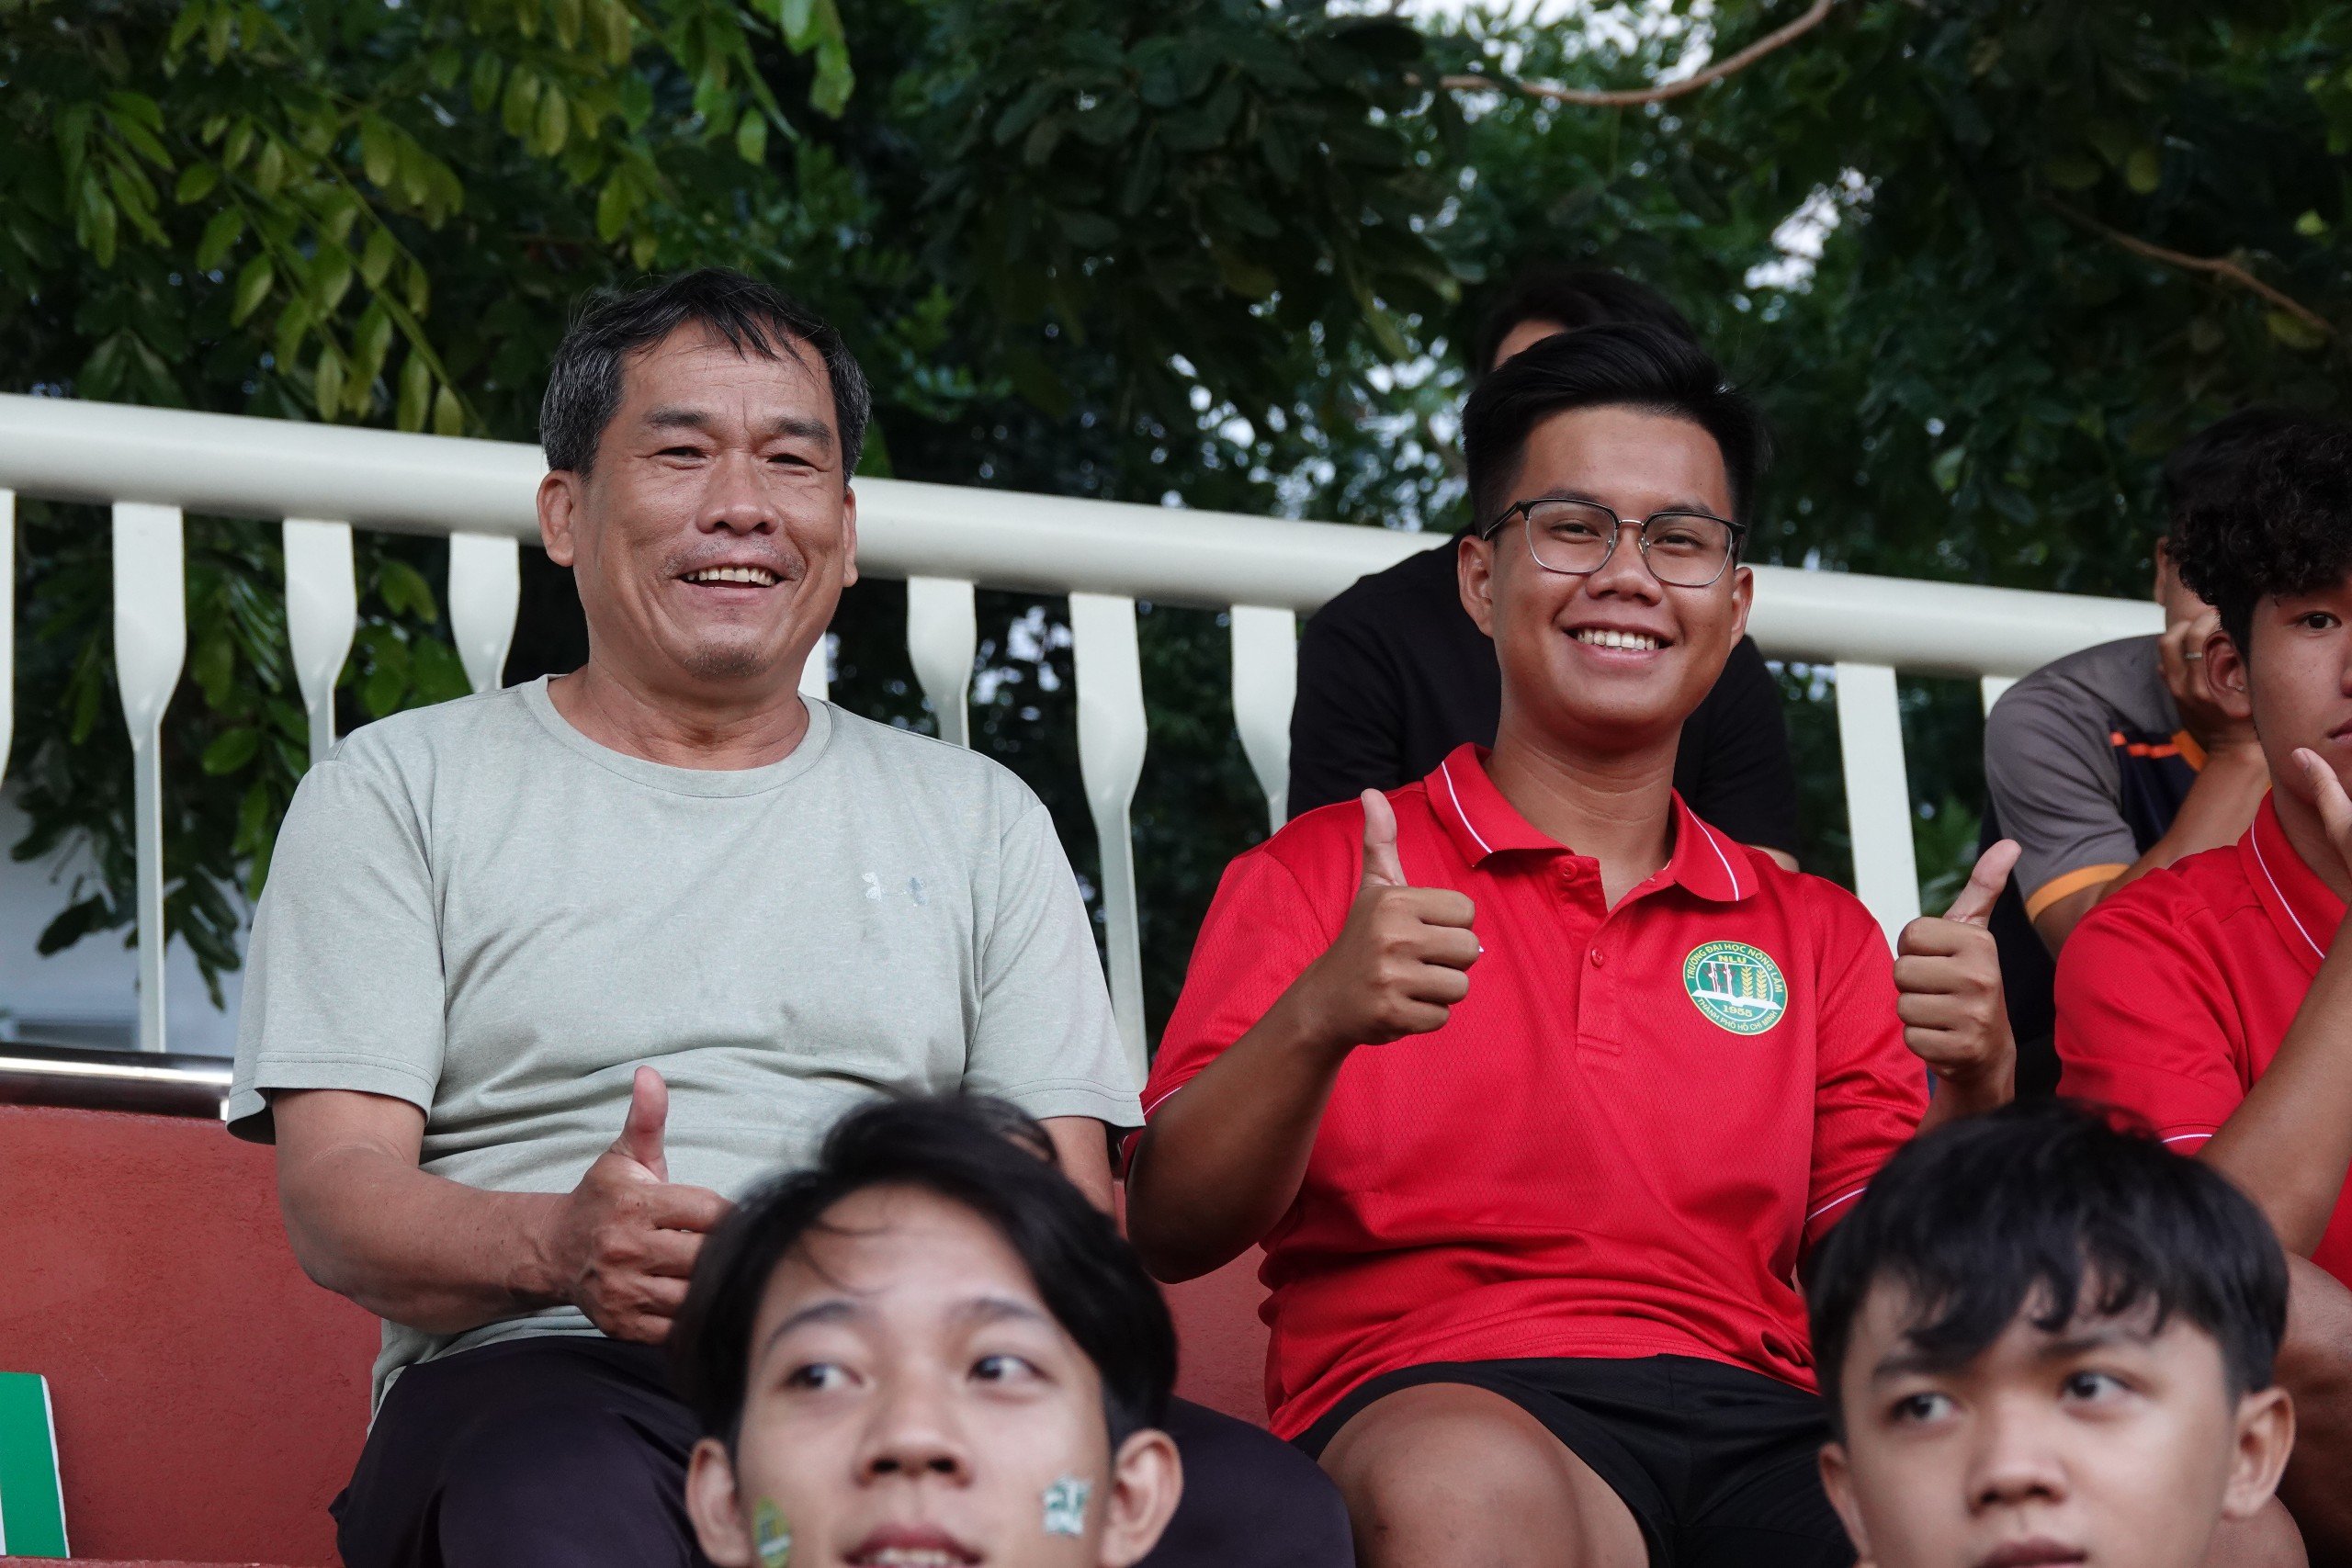 Cầu thủ Châu Quỳnh Hưng bị chấn thương không thể thi đấu vẫn cùng bố là ông Châu Văn Lành lên sân cổ vũ đội bóng Trường ĐH Nông Lâm